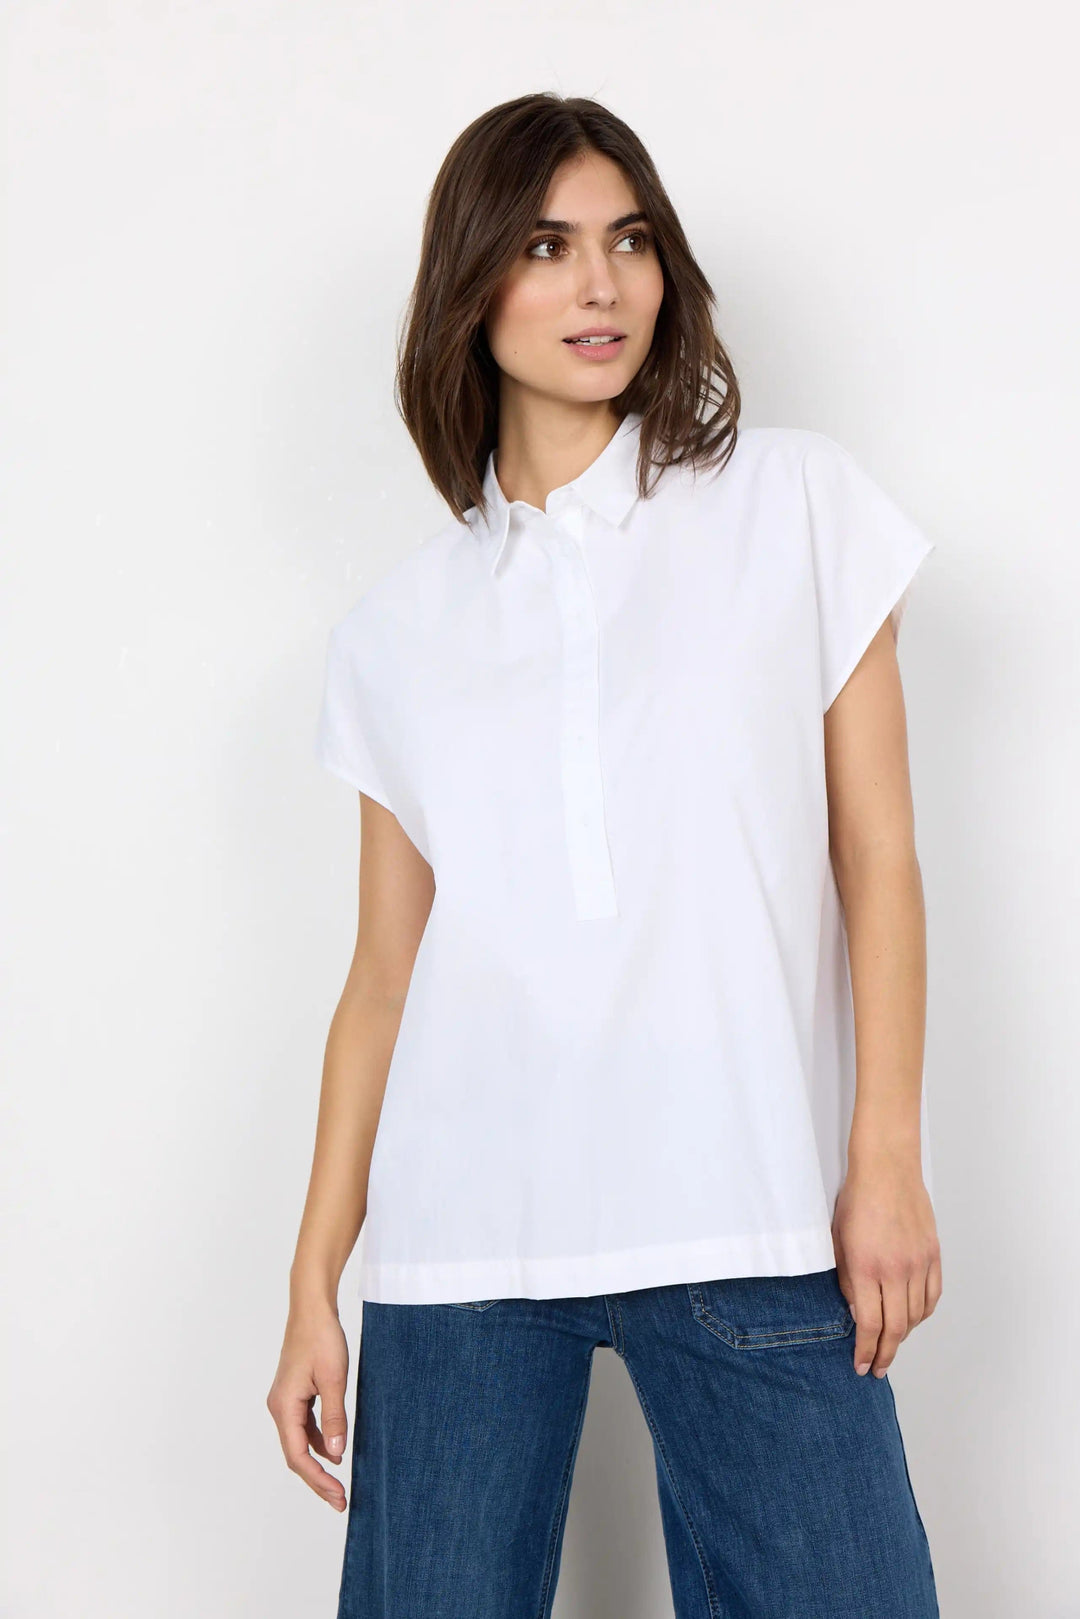 Sc-Netti 14 | Skjorter og bluser | Smuk - Dameklær på nett